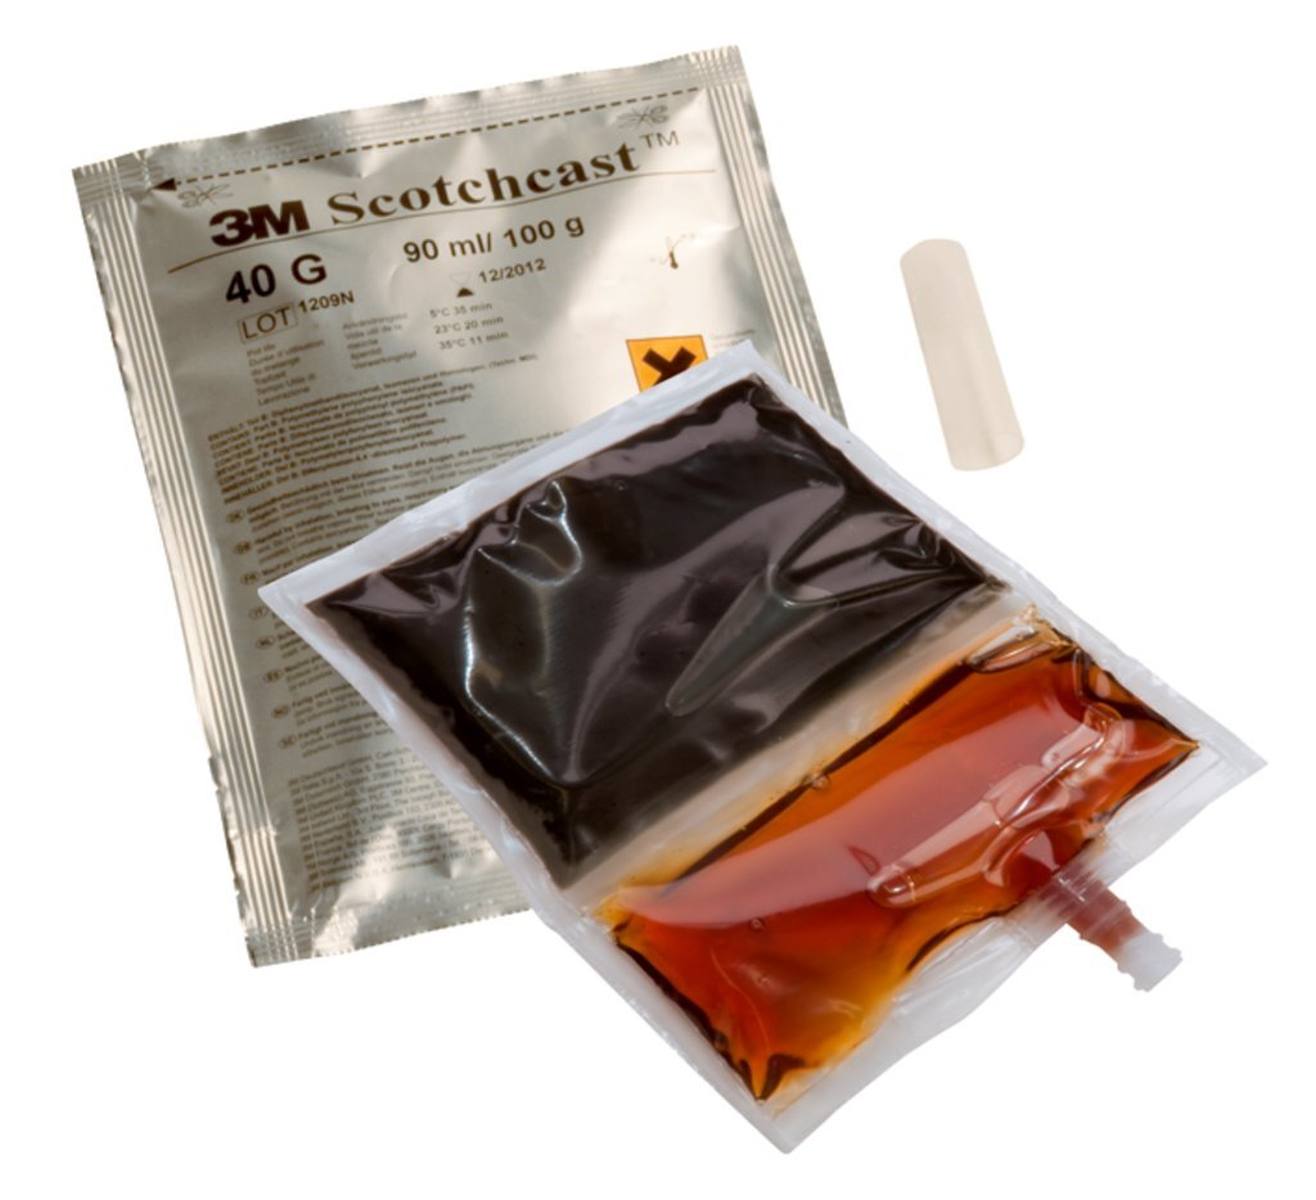 3M Scotchcast 40-C-B, Résine polyuréthane pour câbles, système GMG à 2 composants, taille C, 370 ml, grand emballage